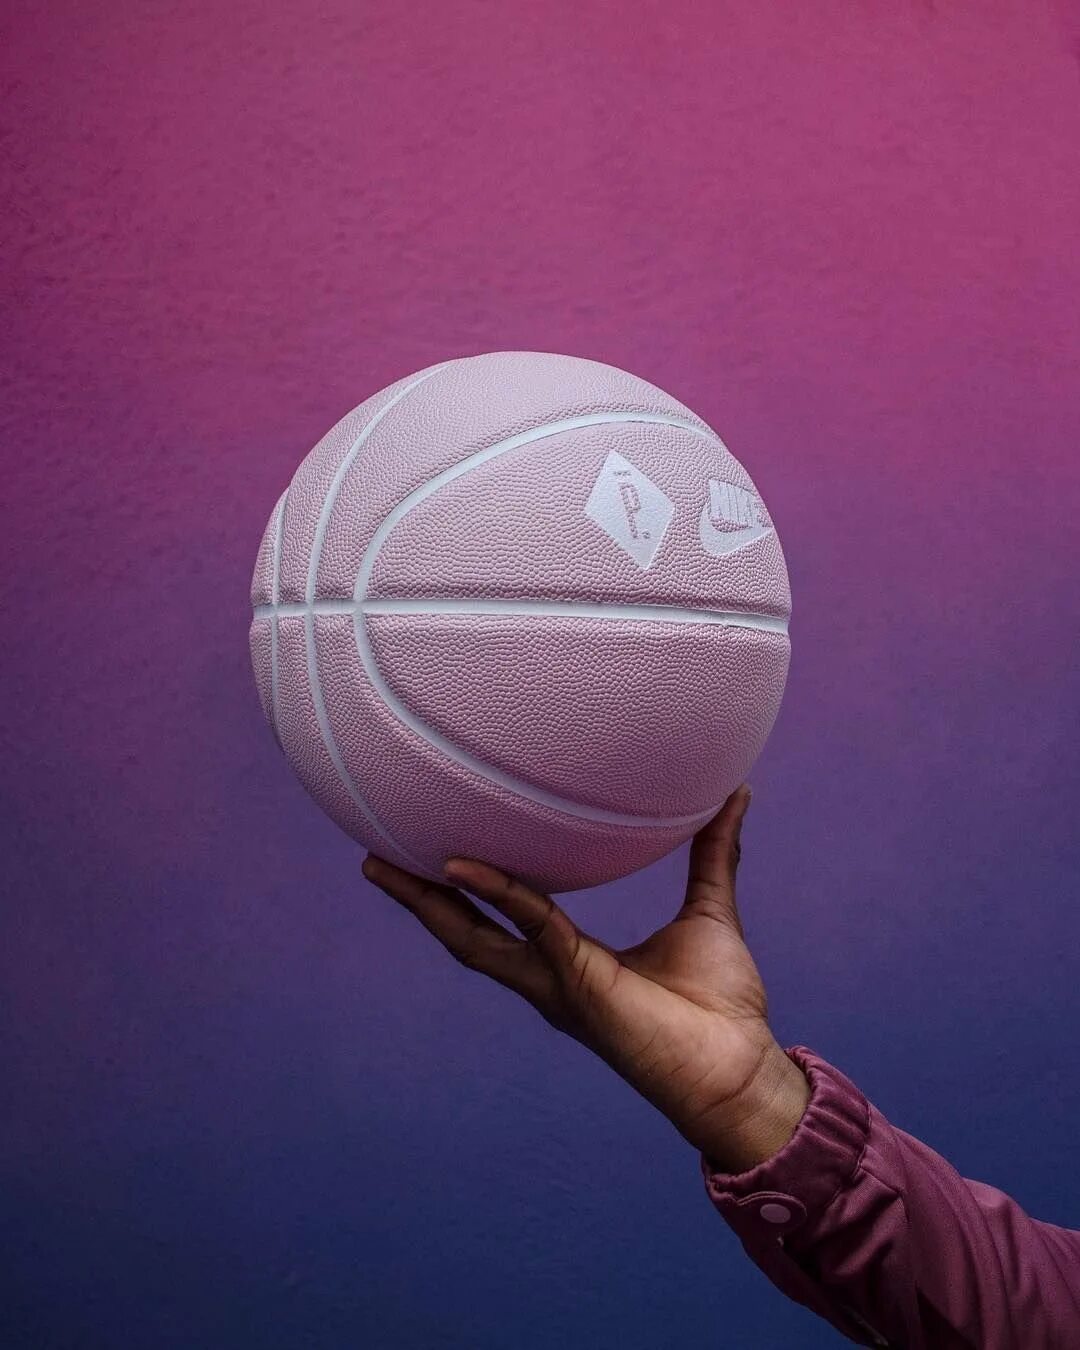 Бол личный. Розовый мяч Nike баскетбольный. Баскетбольный мяч найк фиолетовый. Баскетбольный мяч найк розовый.